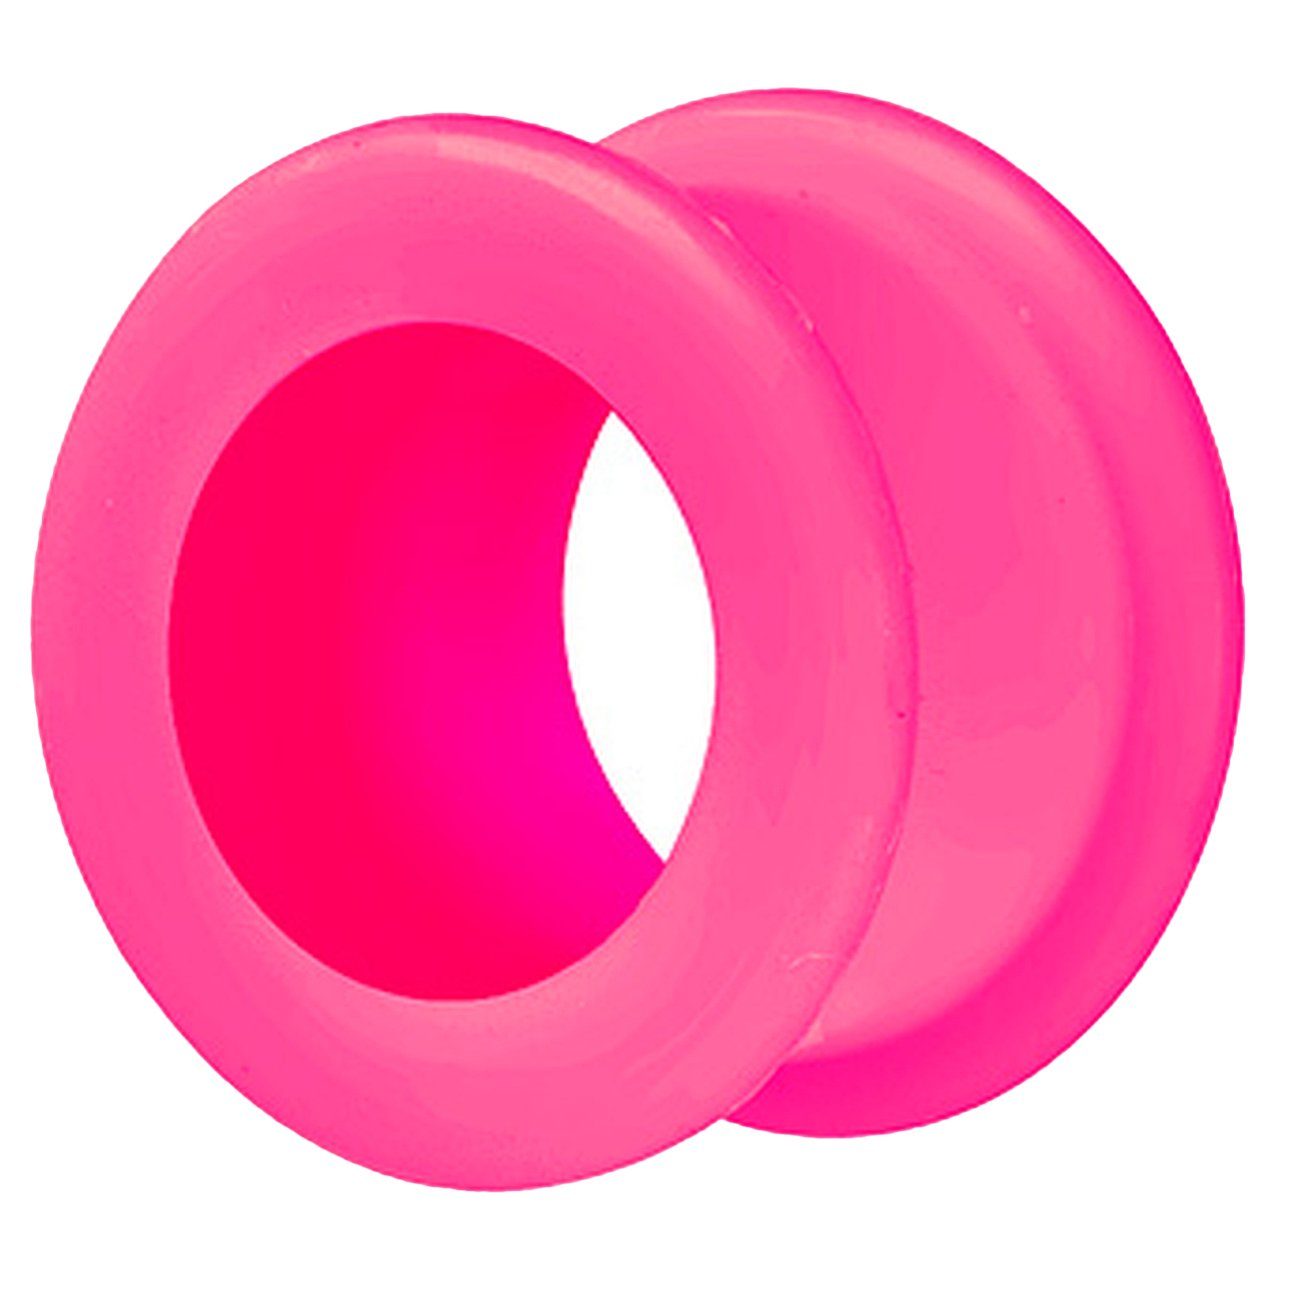 Flexibel, XXL Flesh Taffstyle Pink Creole Plug Extra Tunnel Flared Piercing Weich Flared Farbiger Double Plug Silikon Big Ohr Ear Rund